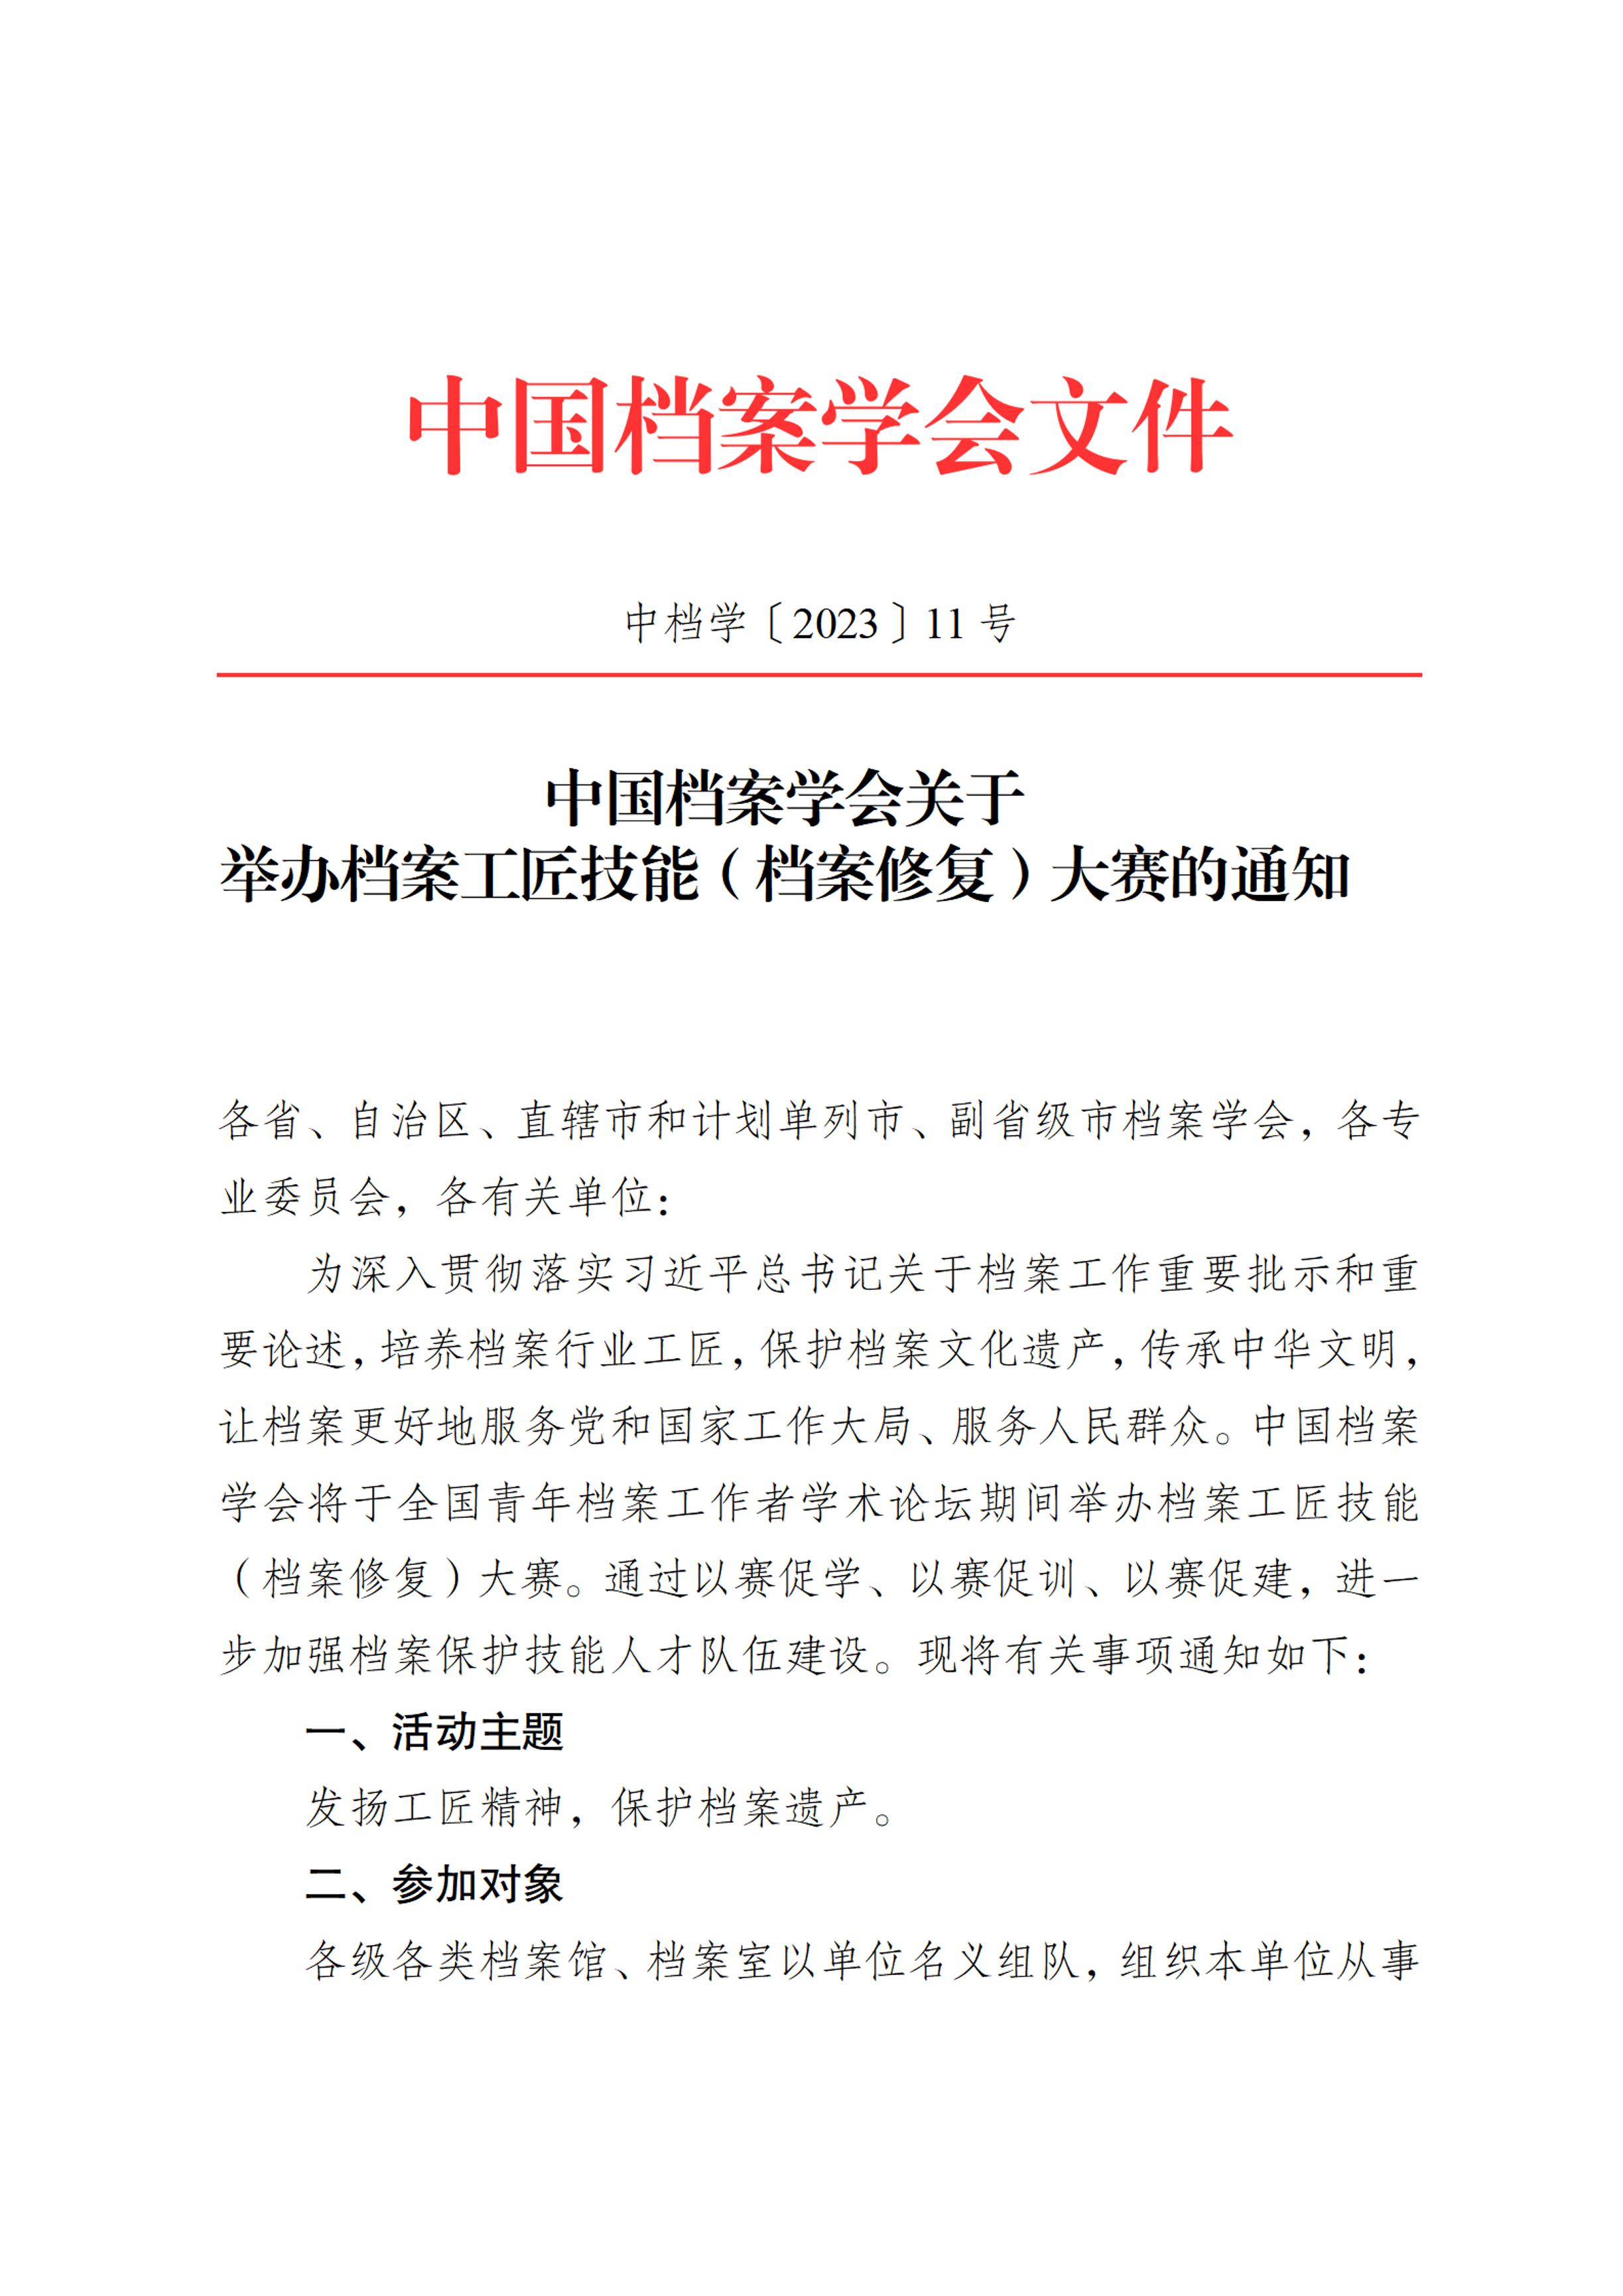 [2023]11号 中国档案学会关于举办档案工匠技能（档案修复）大赛的通知-0